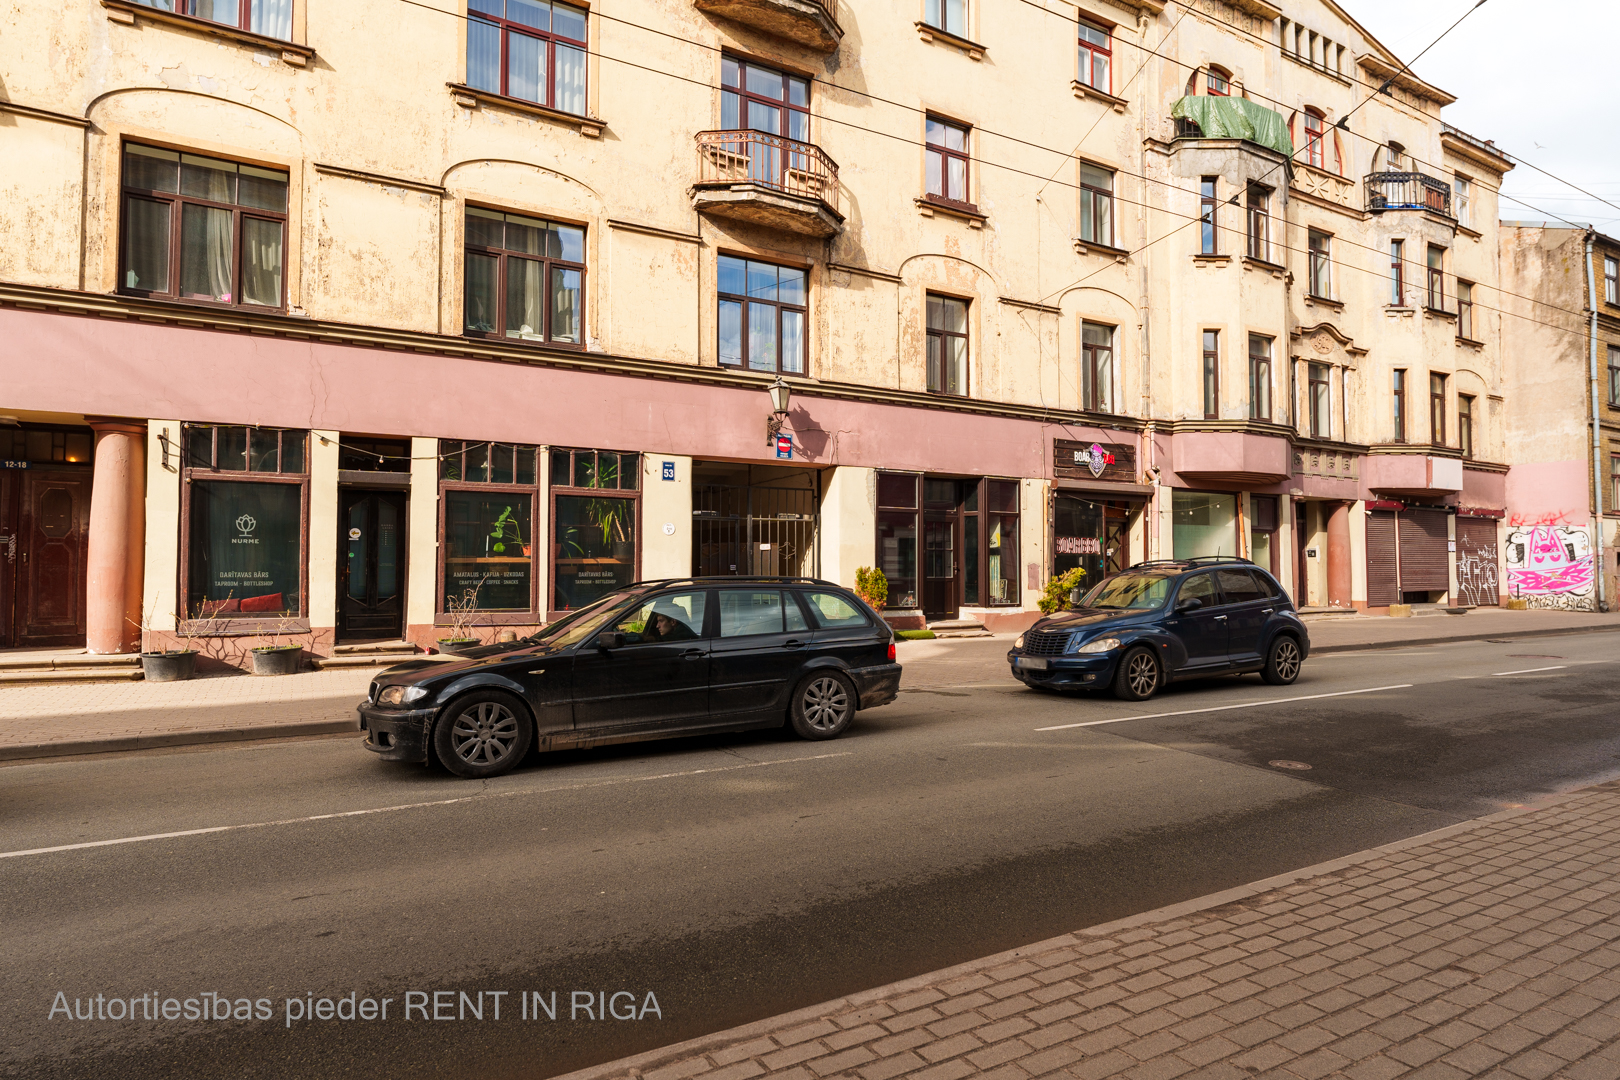 Retail premises for sale, Avotu street - Image 1